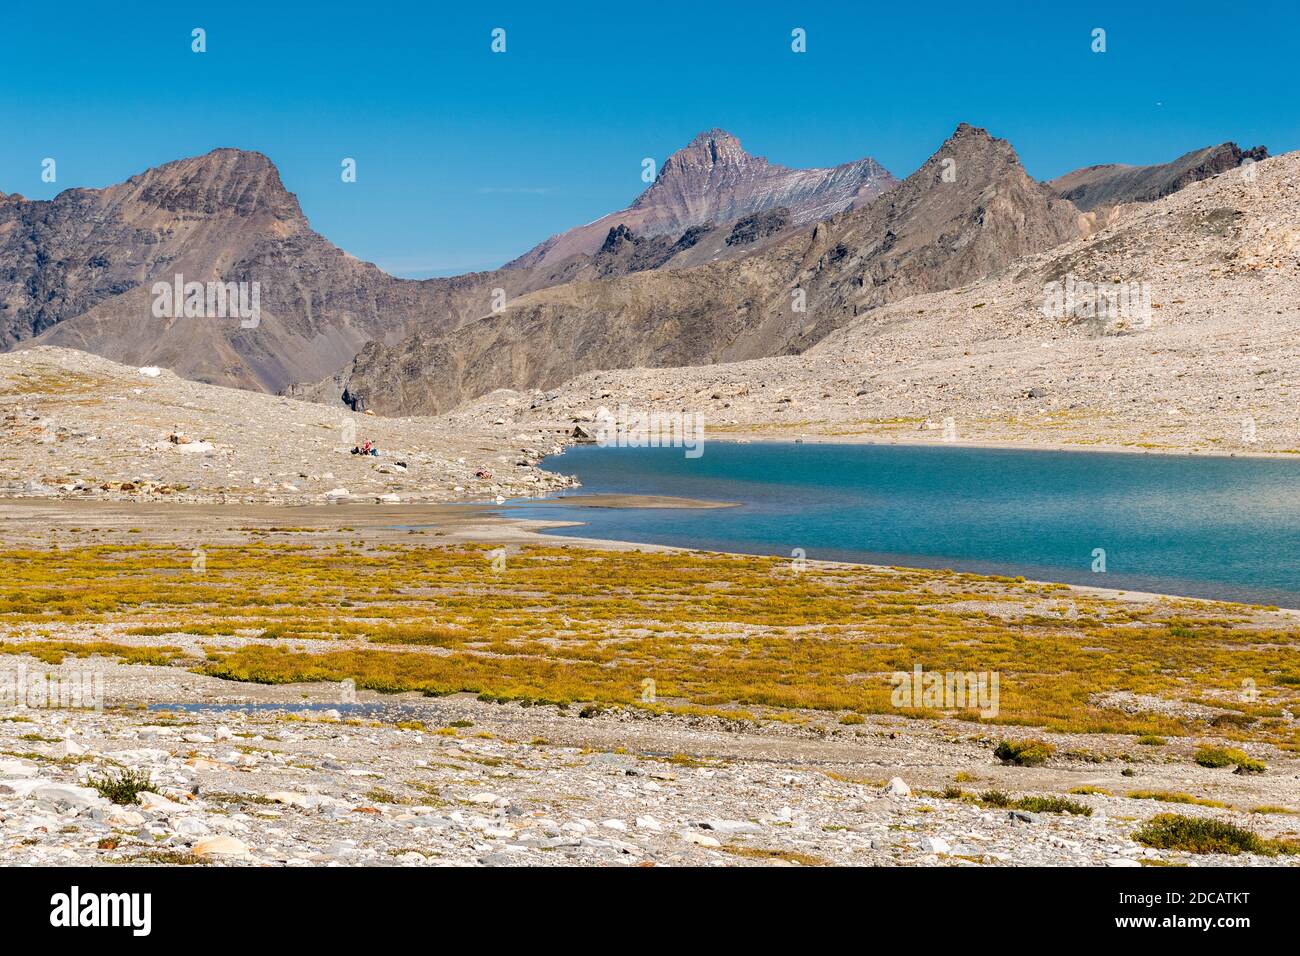 Le lac alpin Goletta dans la vallée de Rhèmes (vallée d'Aoste, Italie) Banque D'Images